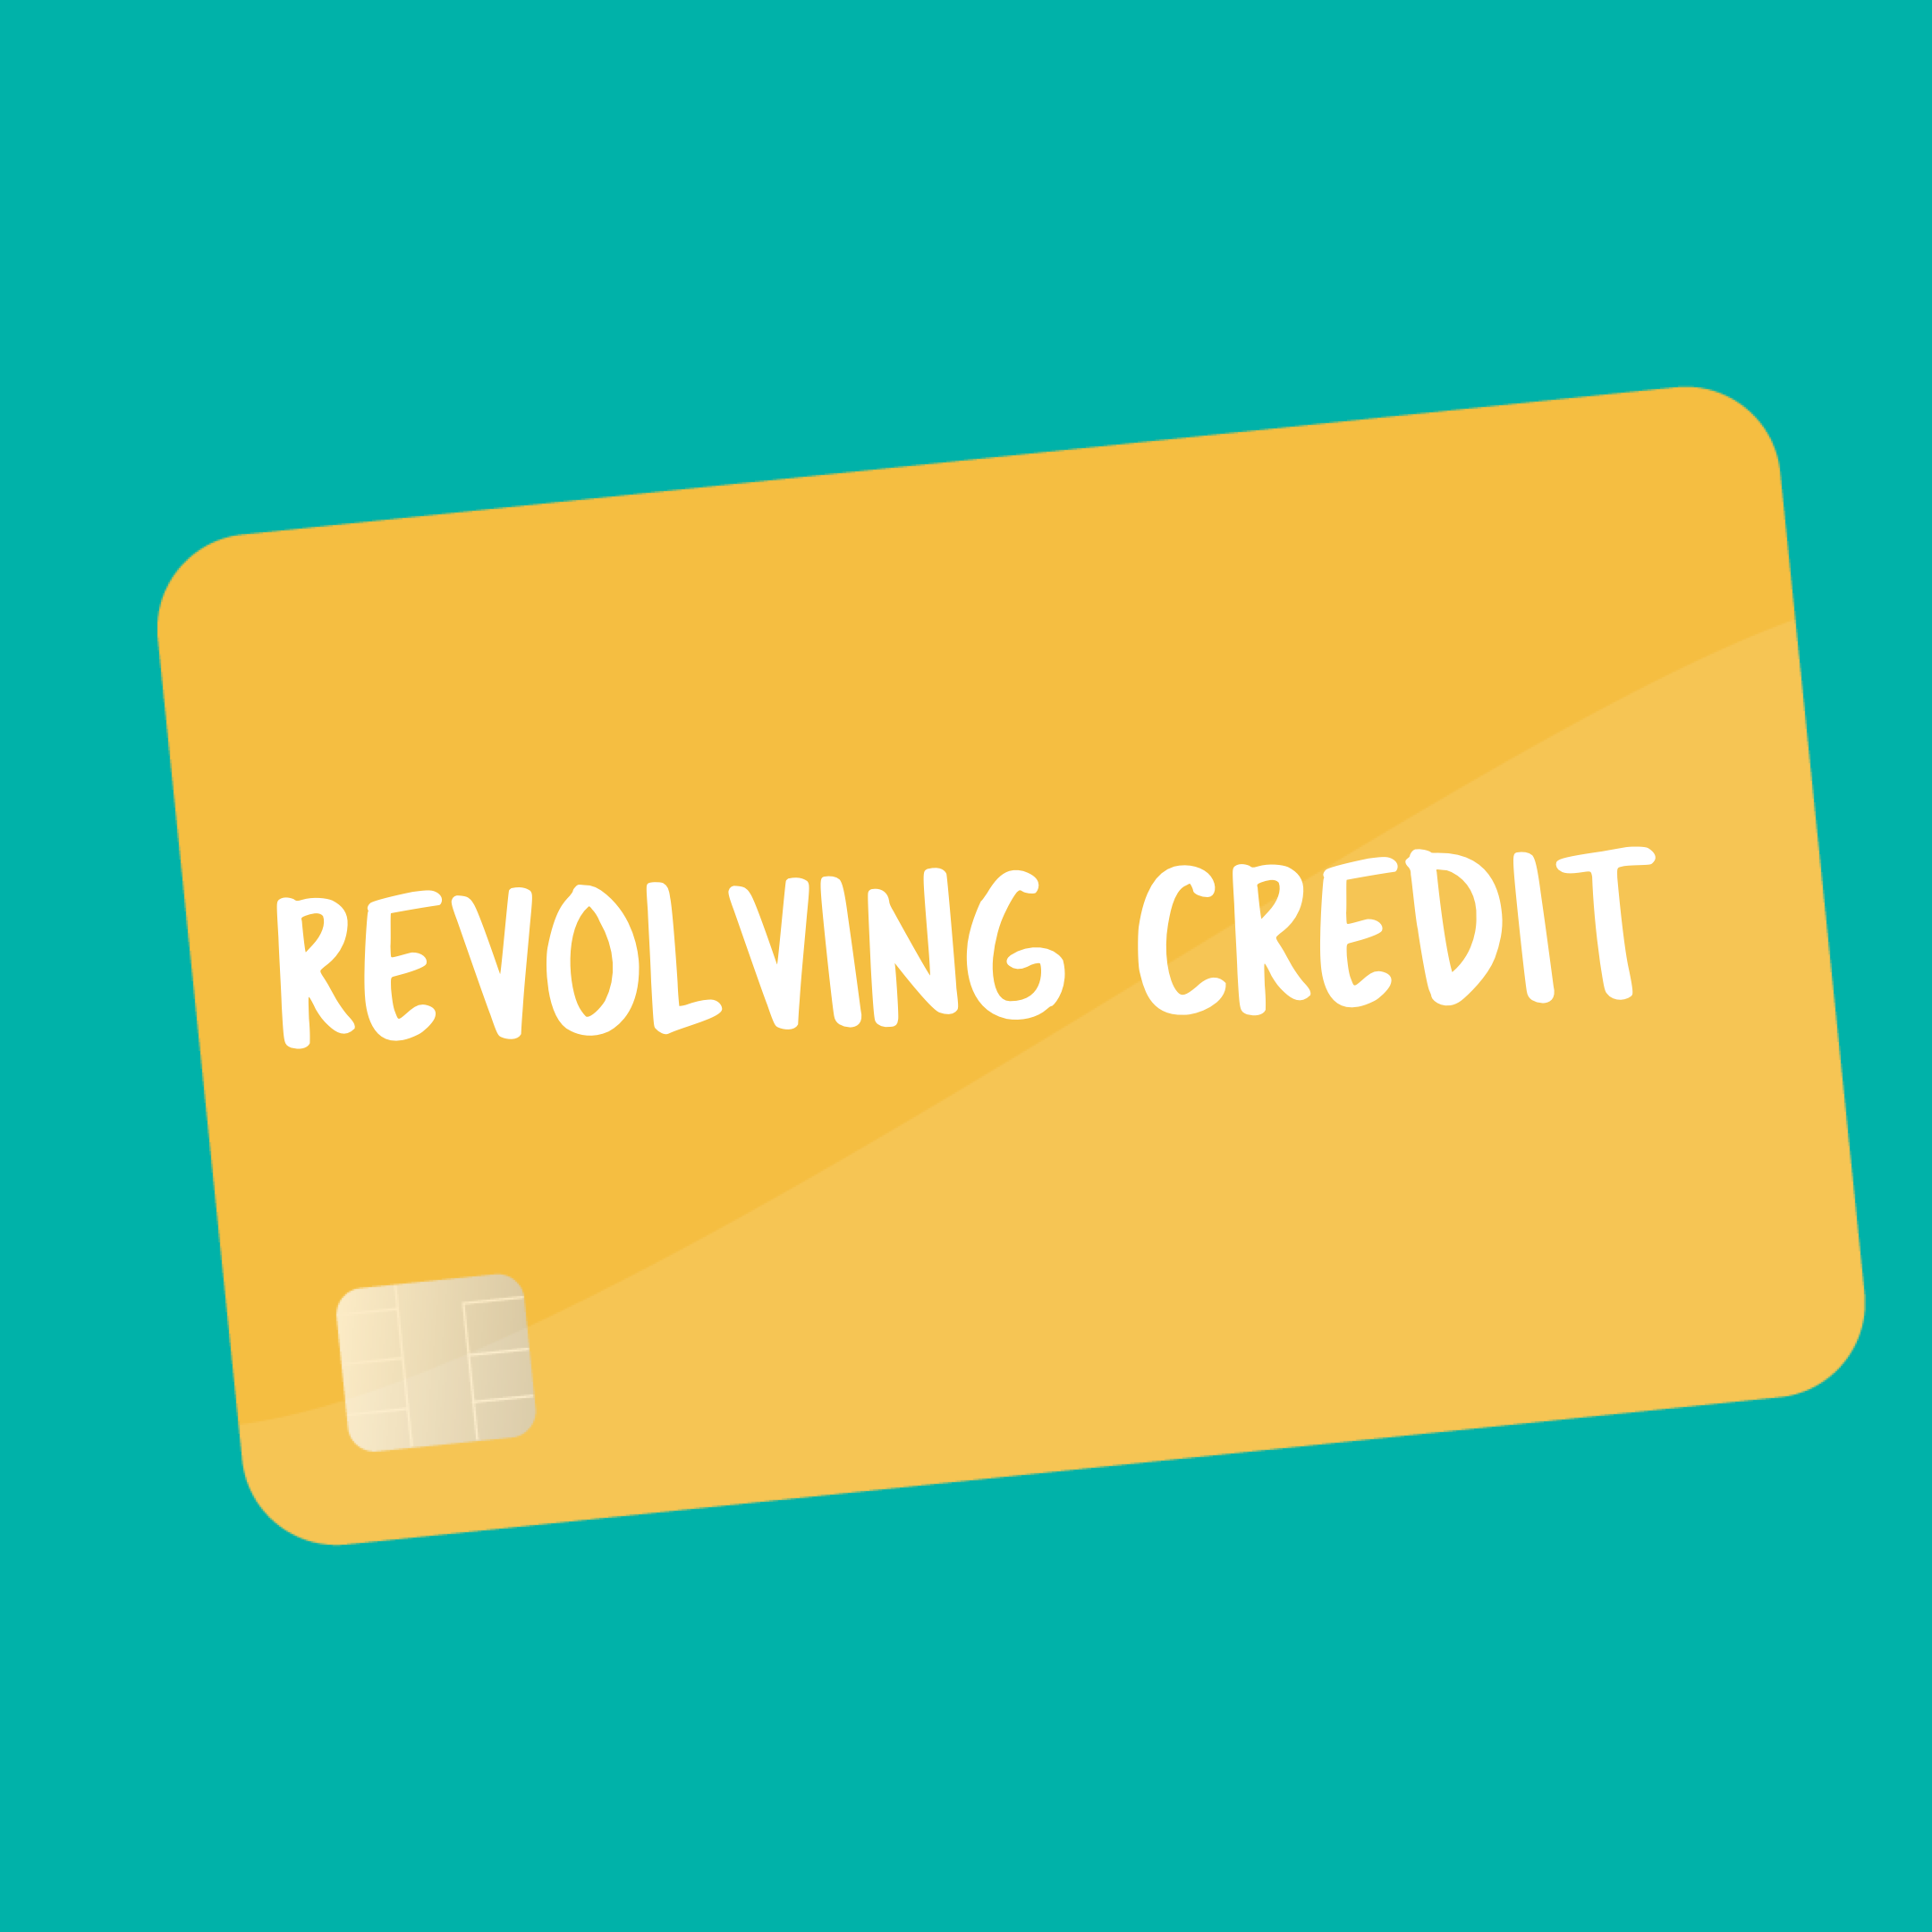 Revolving Credit flashcard